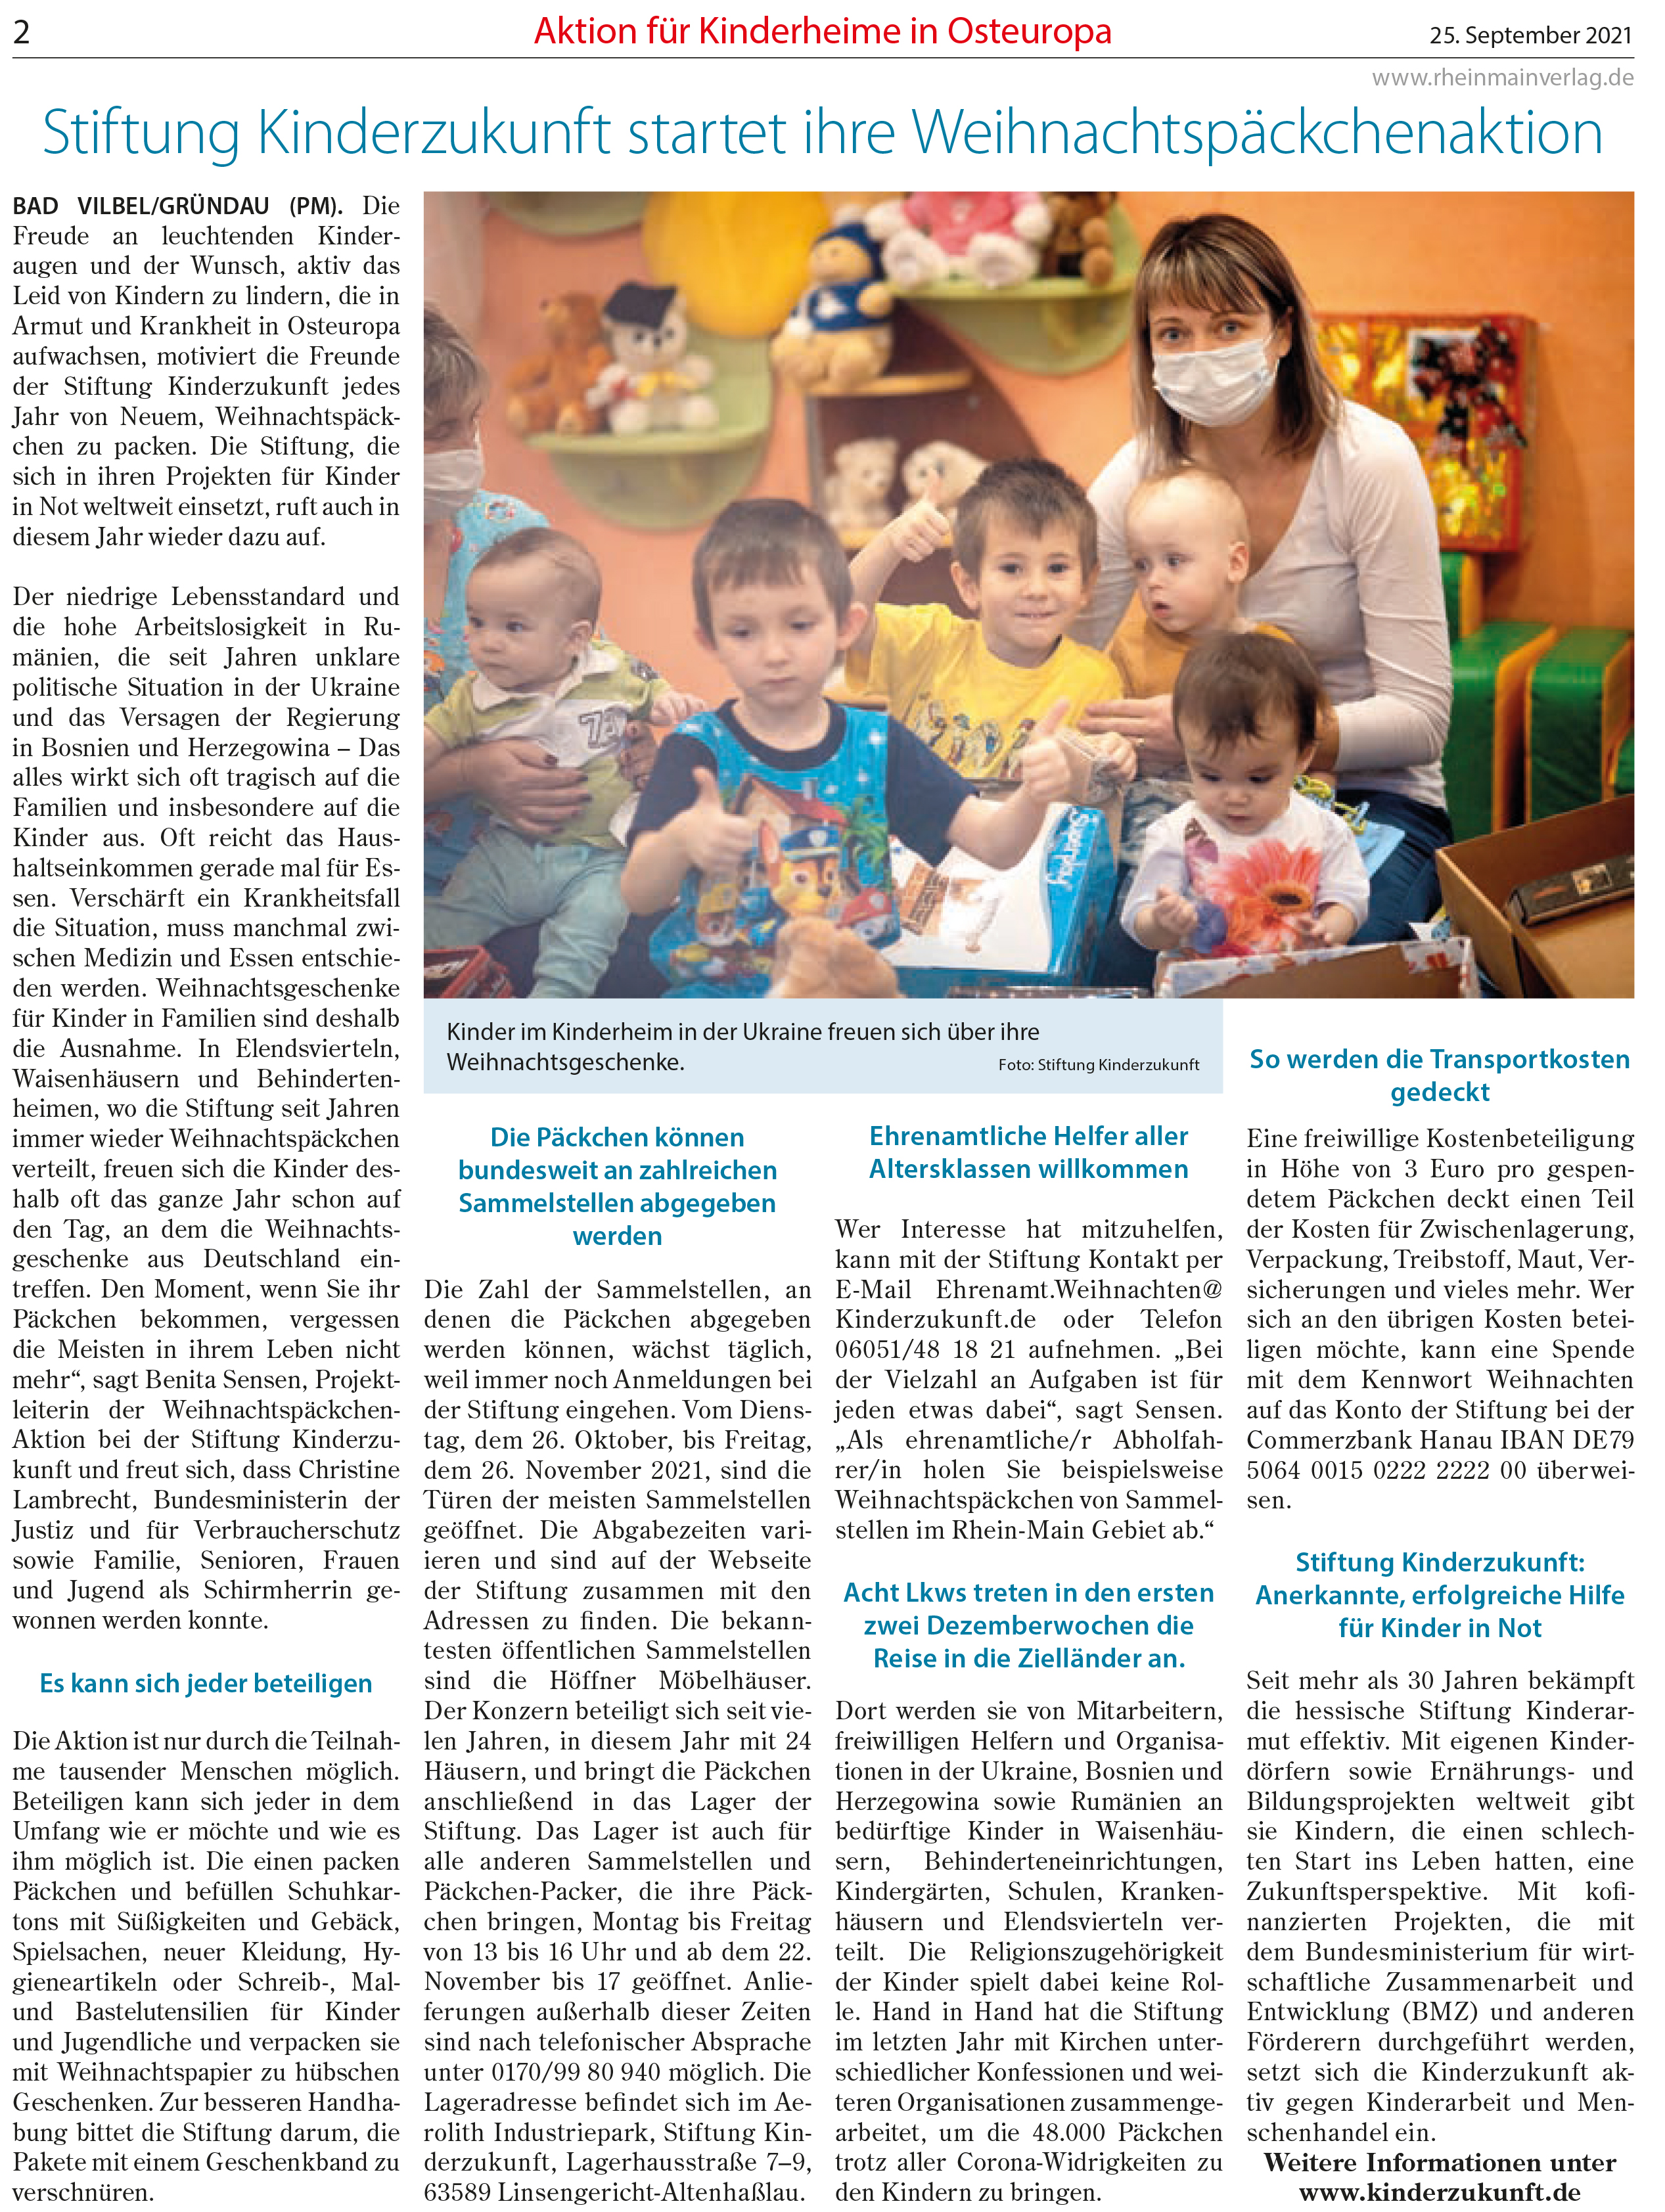 21 09 25 MeinSuedhessen Offenbach Hilfe für Kinder in Not 2